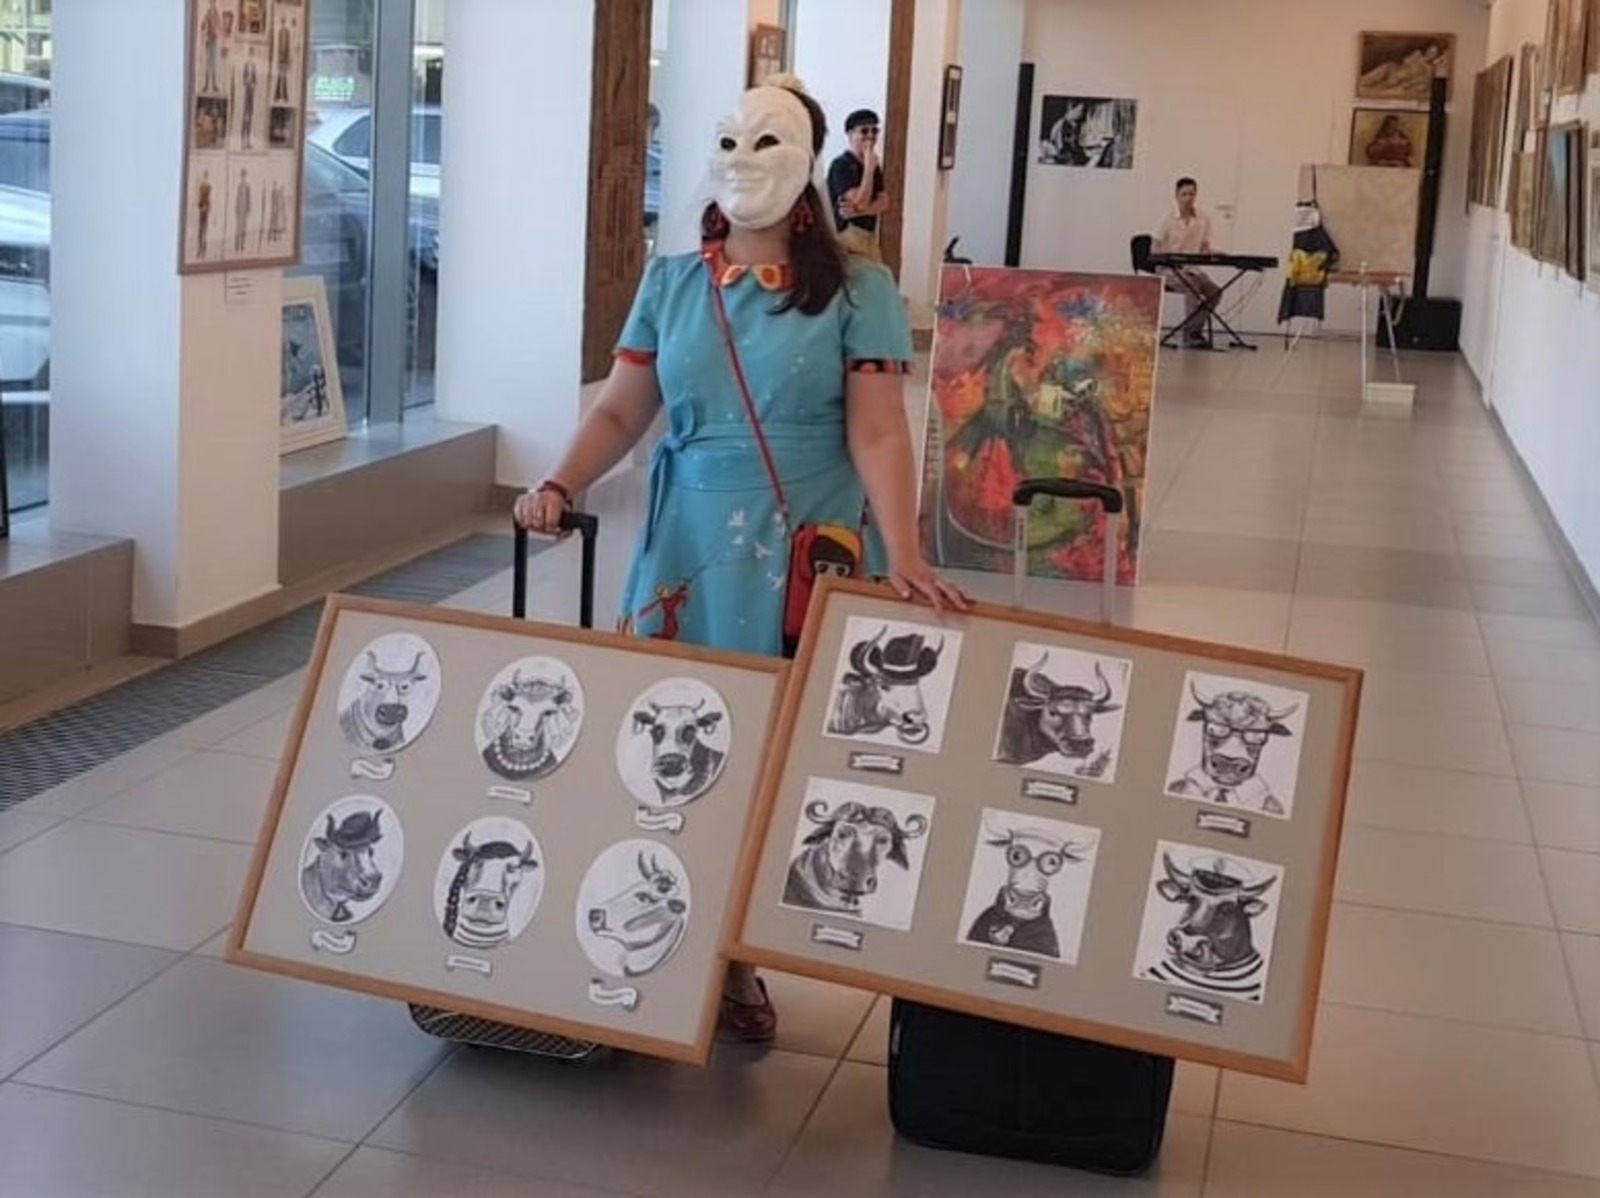 Об  открытии отчётной выставки посвящённой  25-летию регионального отделения творческого союза художников России в республике Башкортостан.